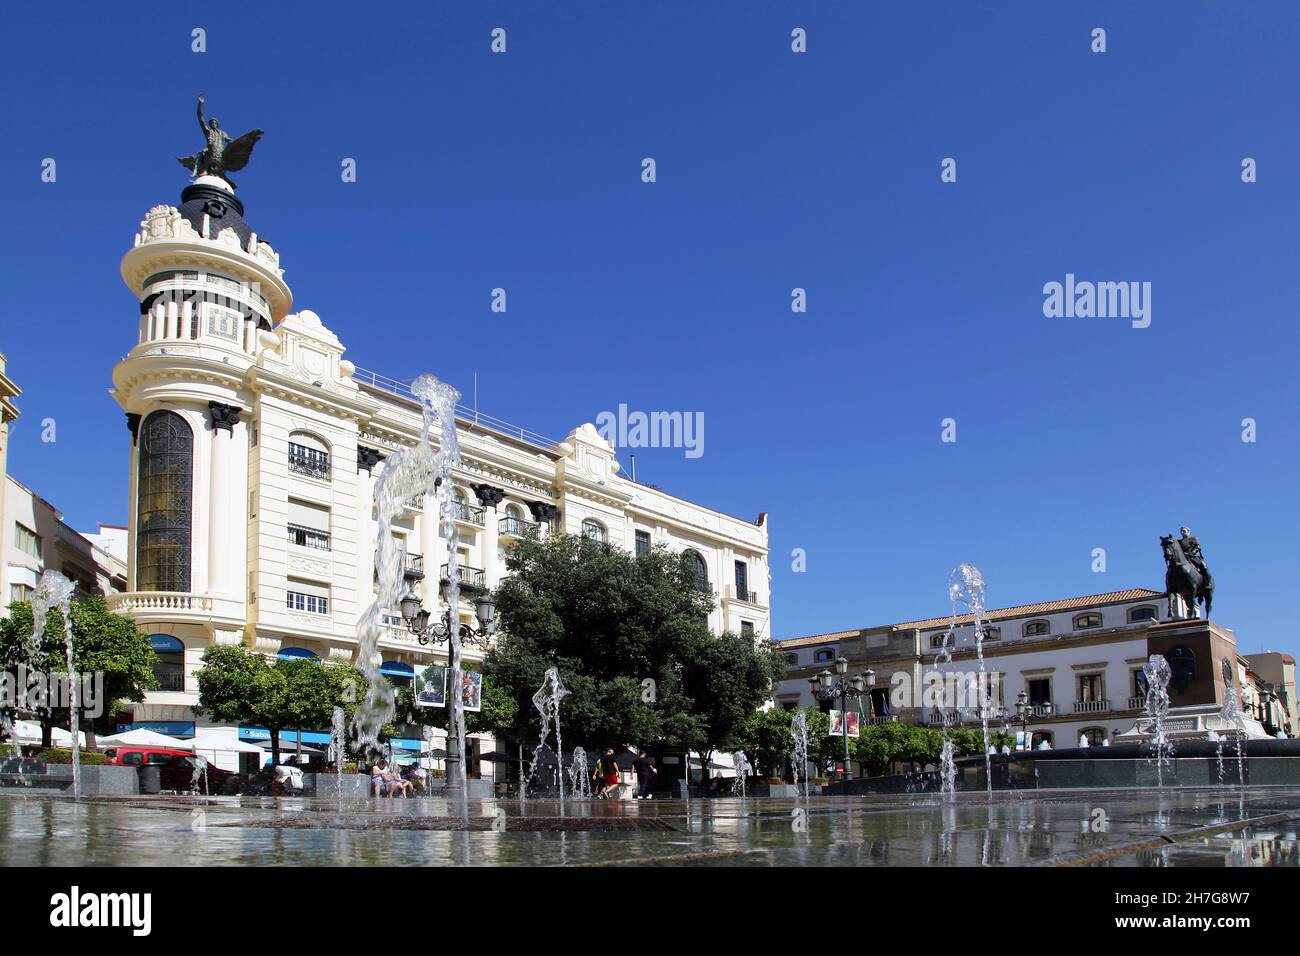 The Tendillas Square,Plaza de las Tendillas in Cordoba, Andalusia, Spain Stock Photo